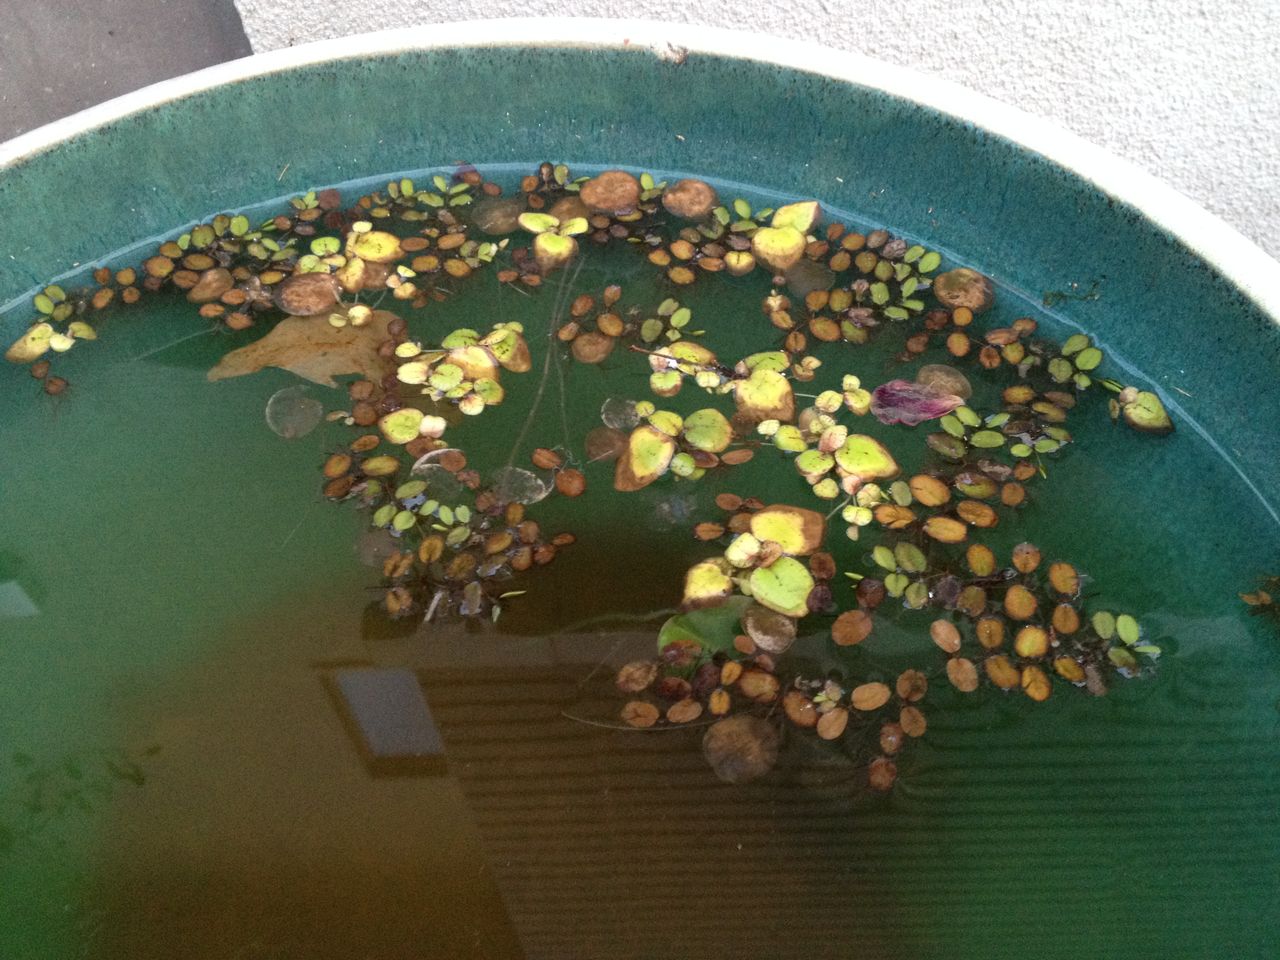 メダカが全滅した後の睡蓮鉢の観察 : 水槽にやったことを忘れないよう 